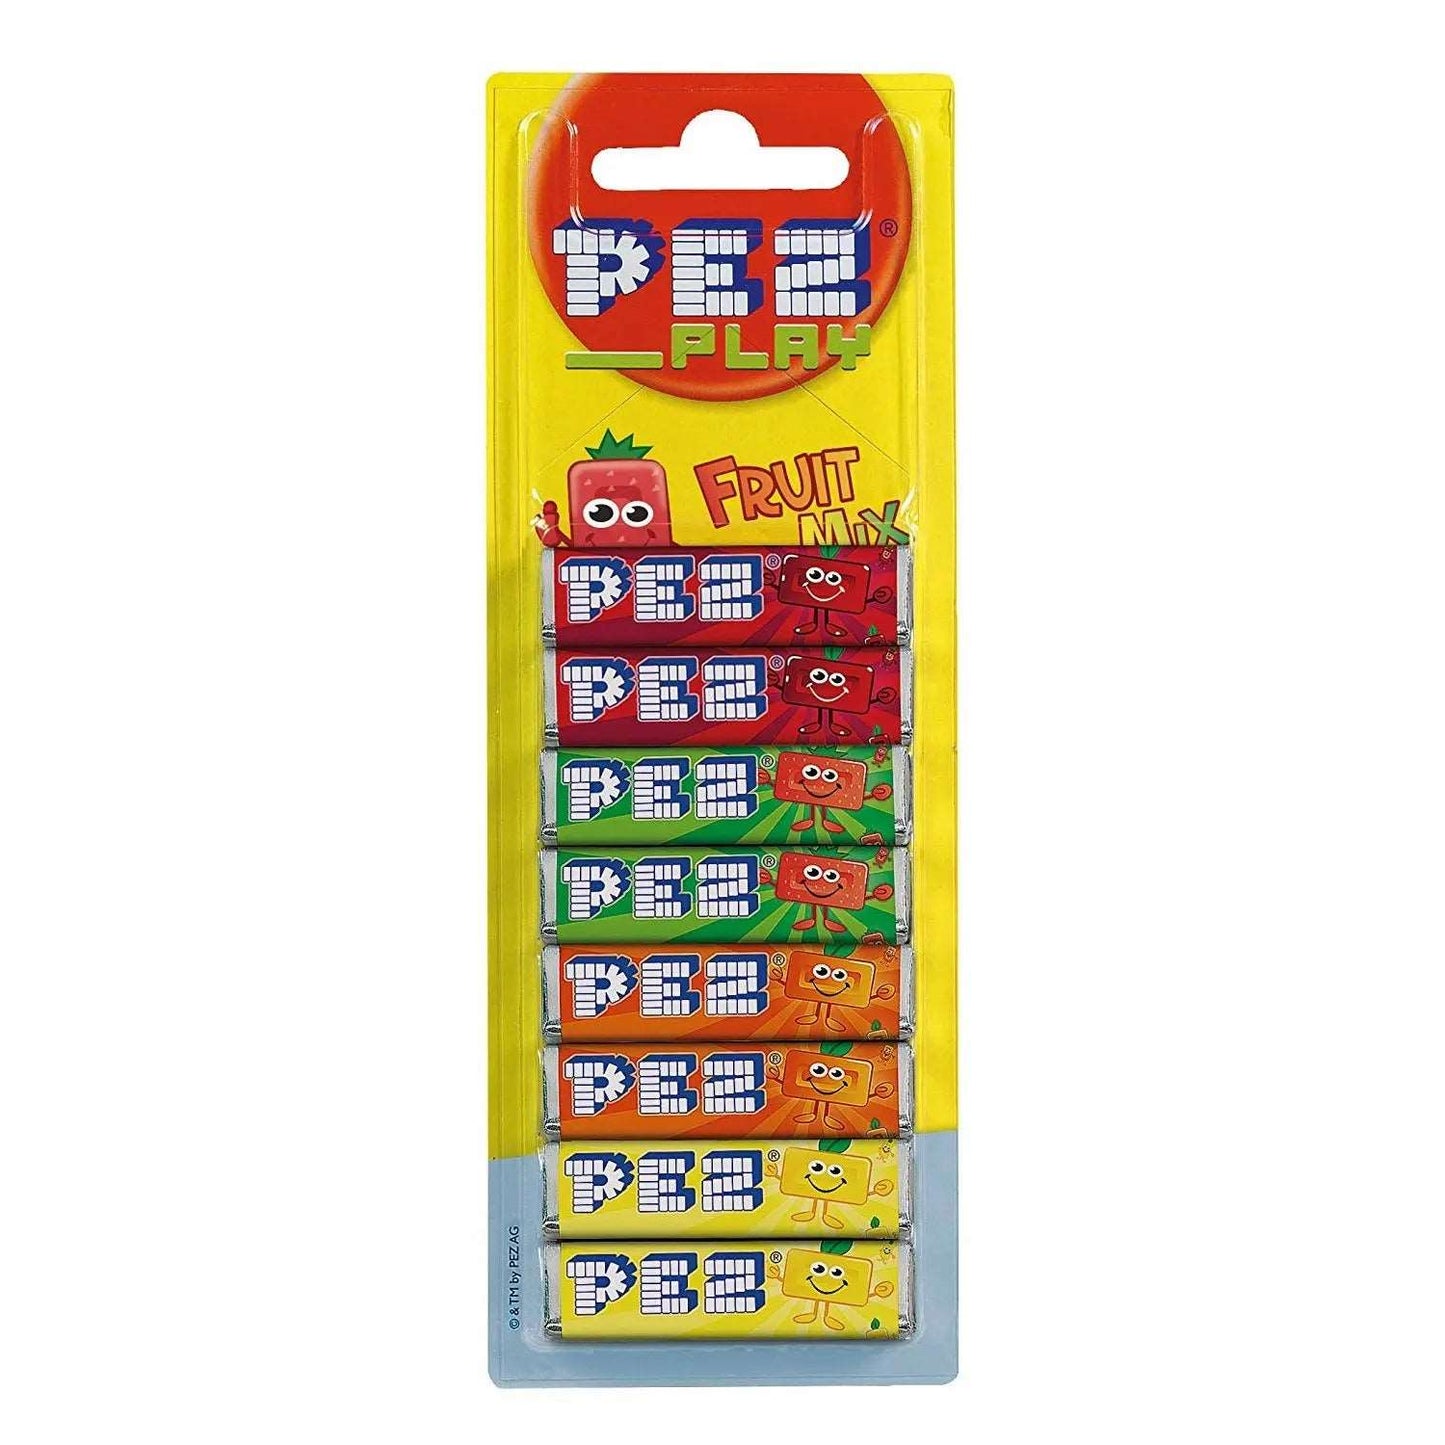 Pez Blister 8-pak Fruit - Ricariche per dispenser PEZ (68g) candy online caramelle Pez